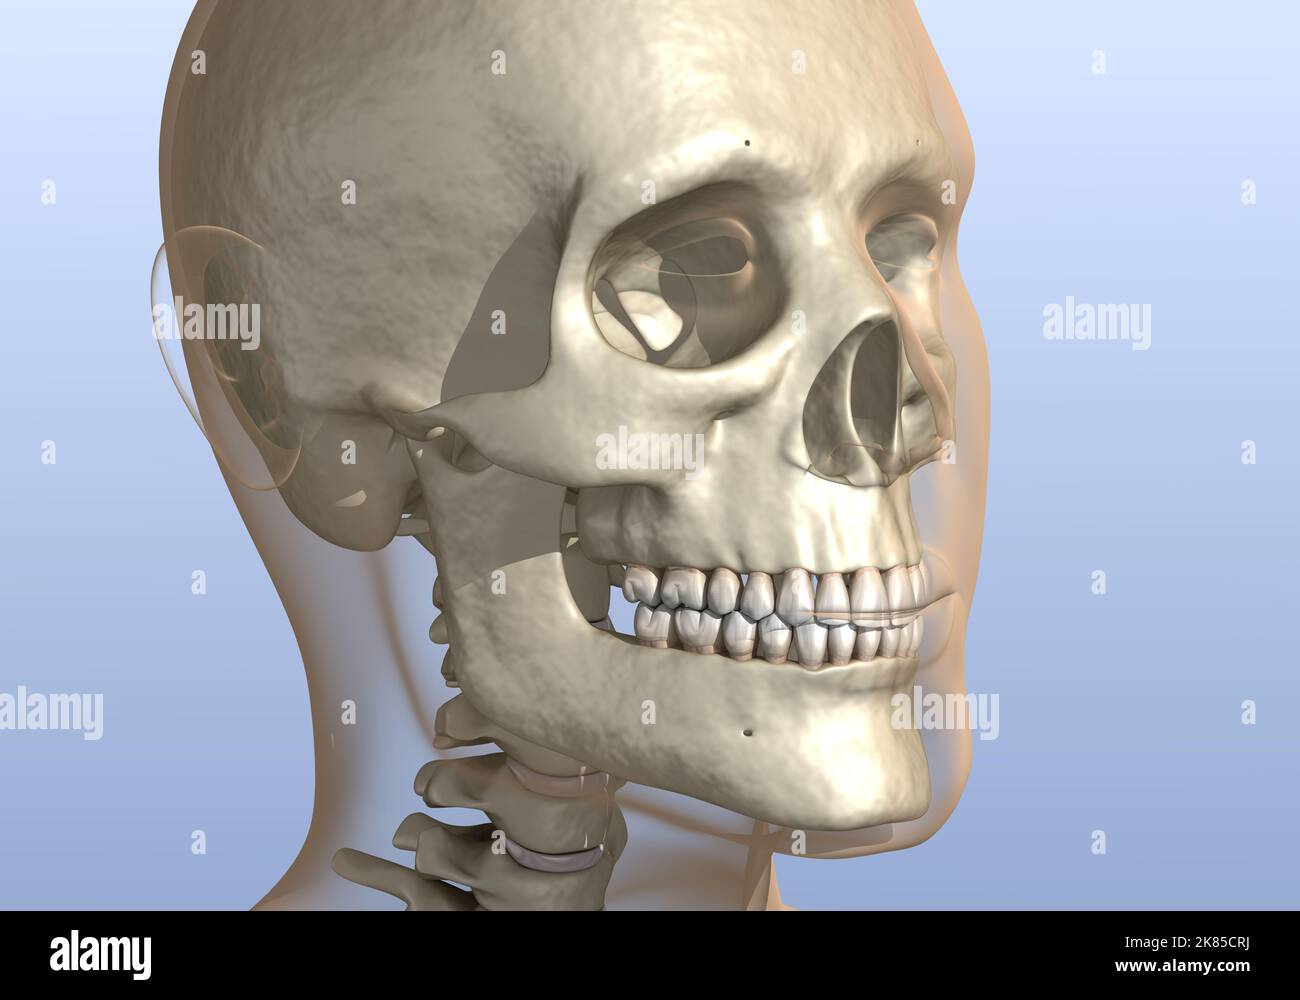 Mento troppo grande o troppo prominente, cranio umano. Illustrazione 3D accurata dal punto di vista medico Foto Stock